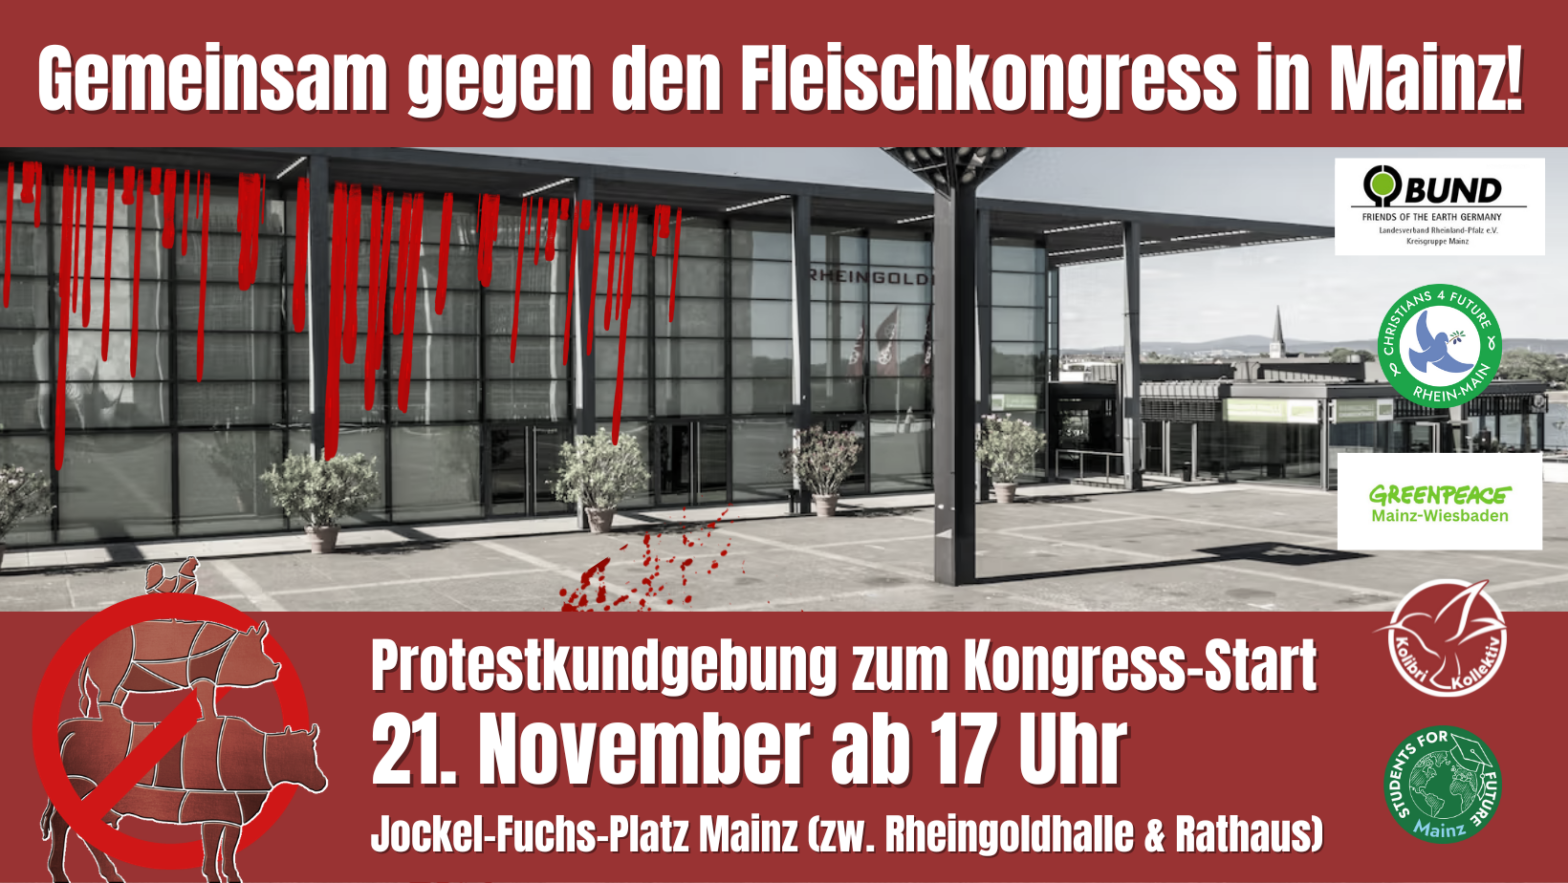 Gemeinsam gegen den Deutschen Fleischkongress in Mainz